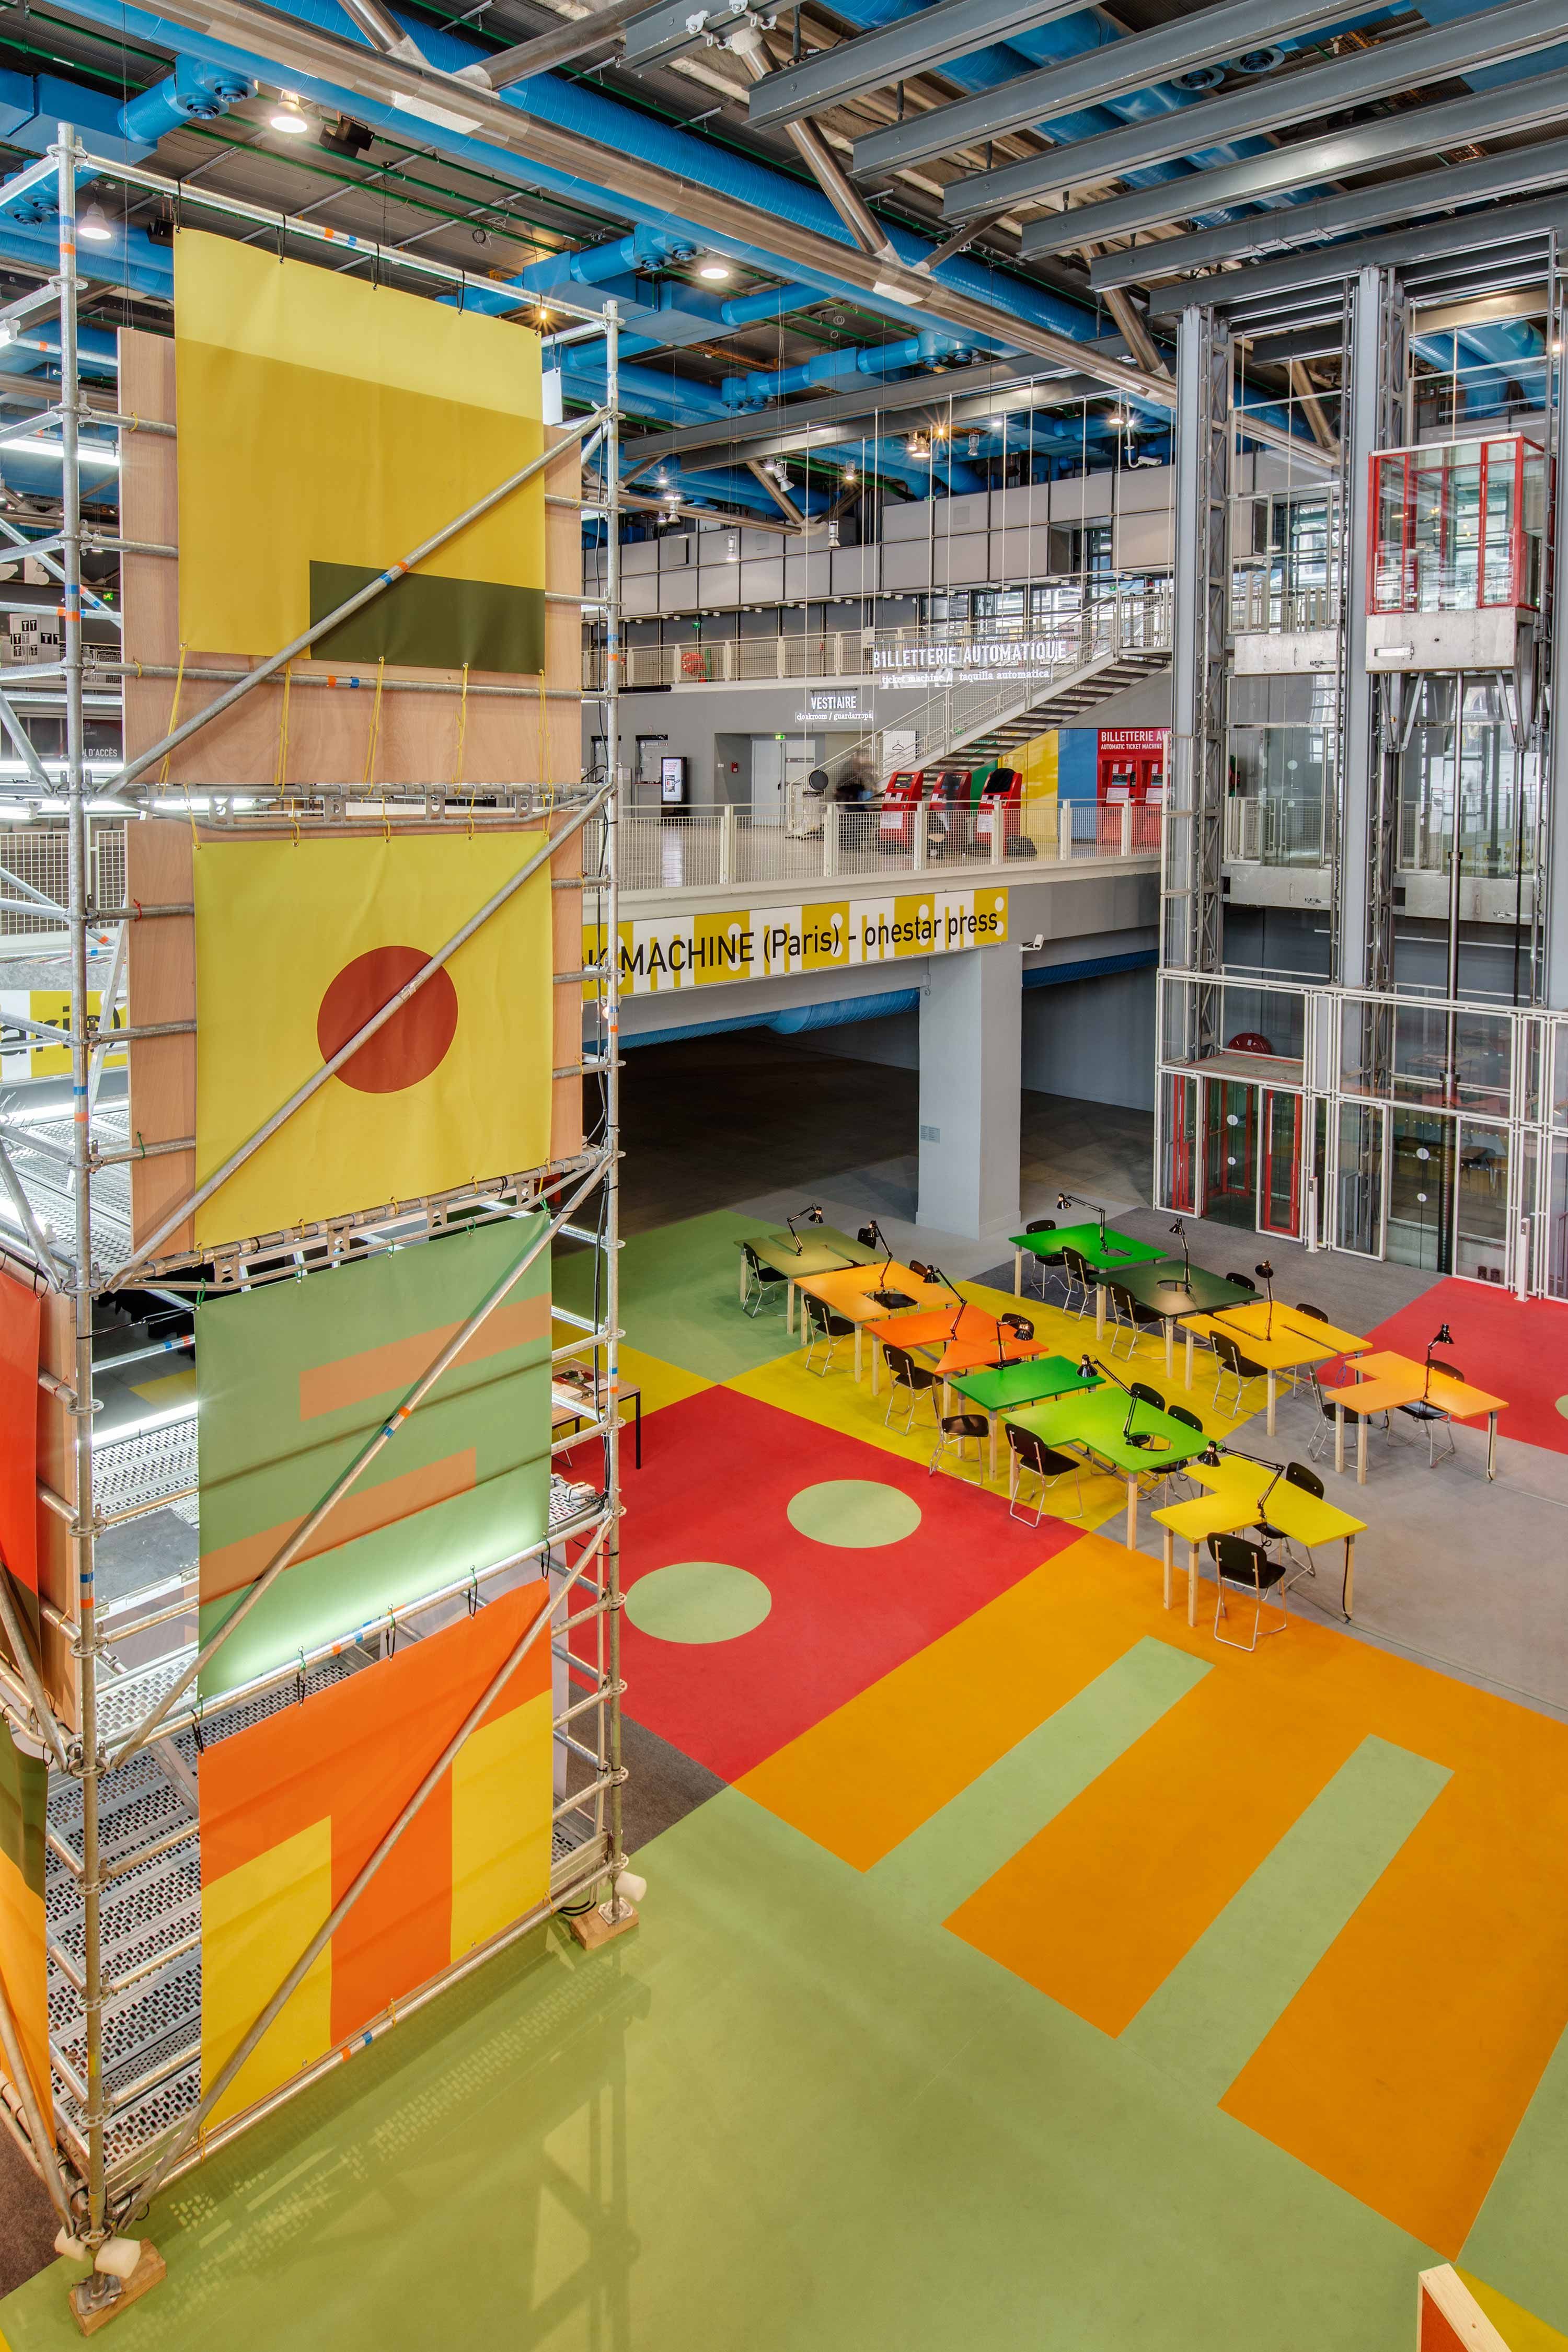 BOOK MACHINE (Paris) @ Centre Pompidou